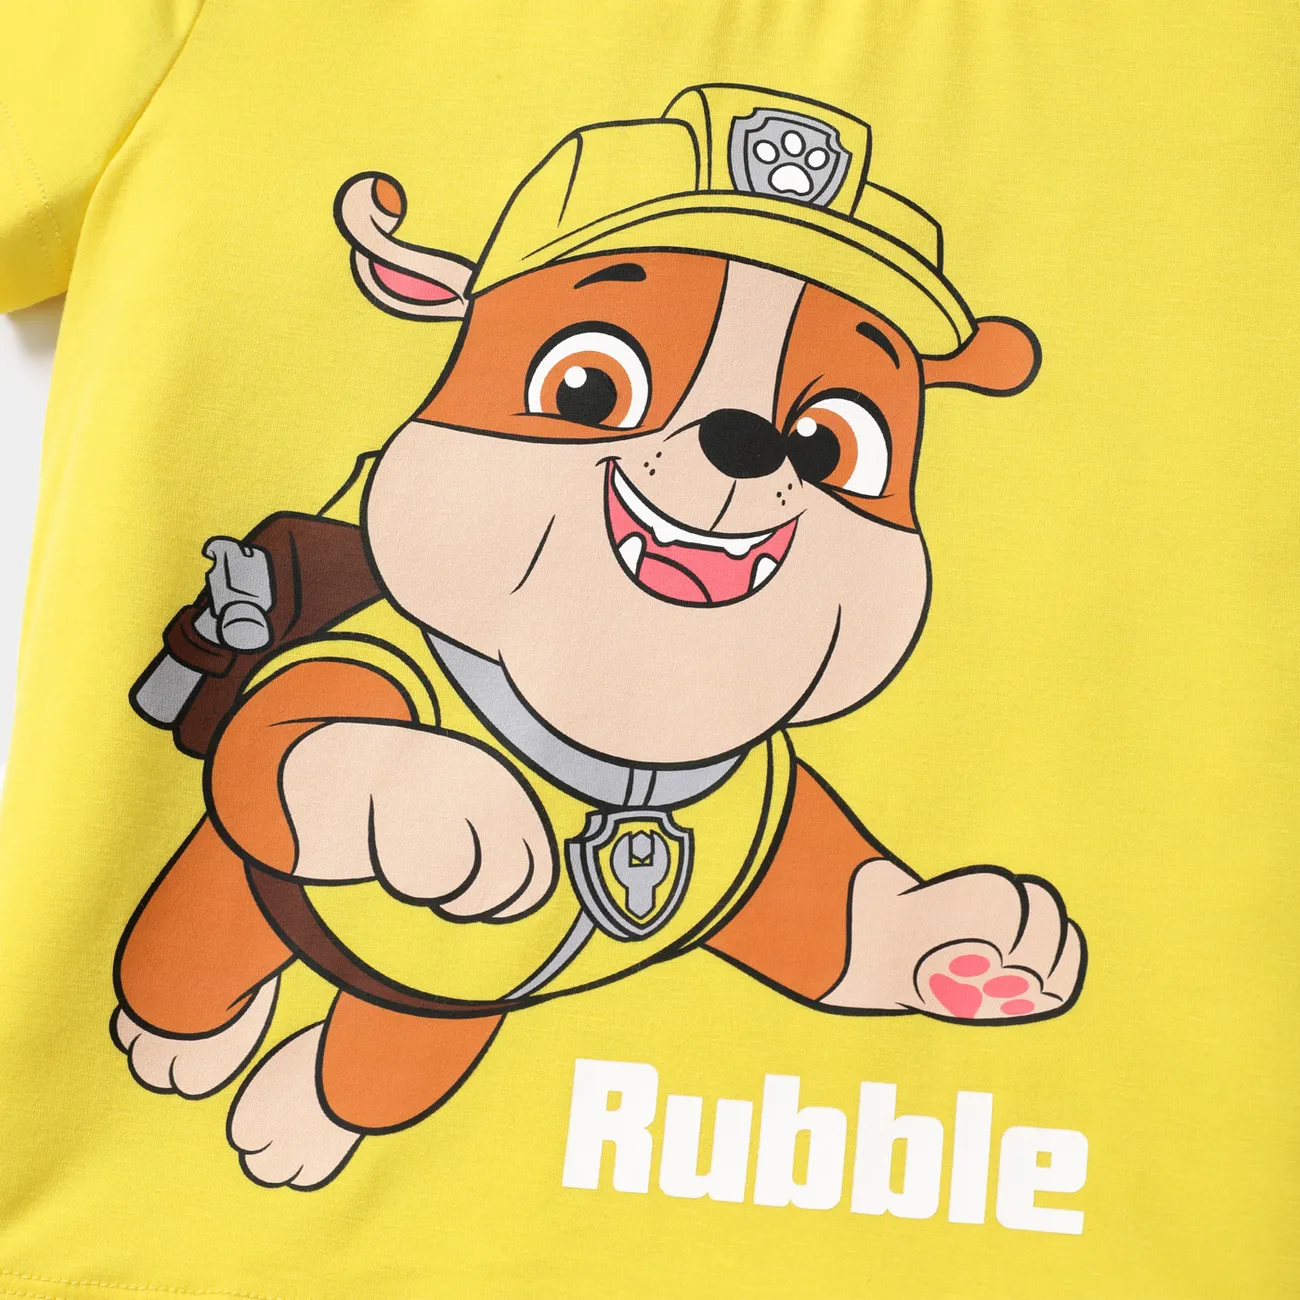 Helfer auf vier Pfoten Ostern Kleinkinder Unisex Kindlich Hund Kurzärmelig T-Shirts gelb big image 1